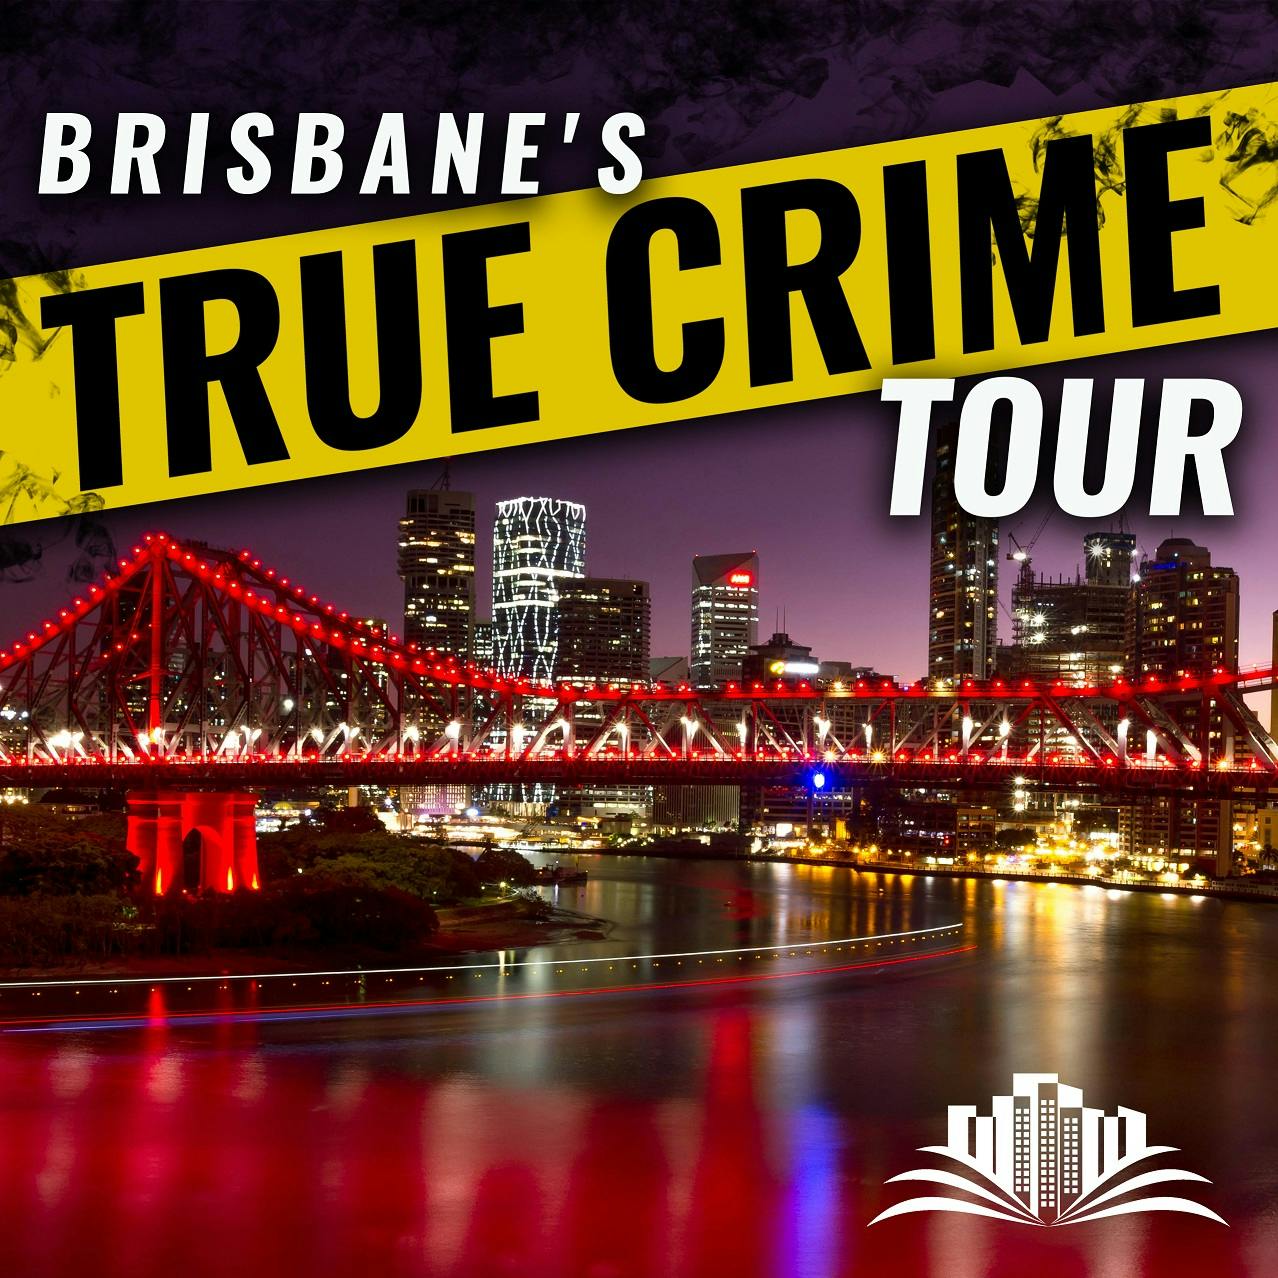 Le storie oscure di Brisbane tour del vero crimine